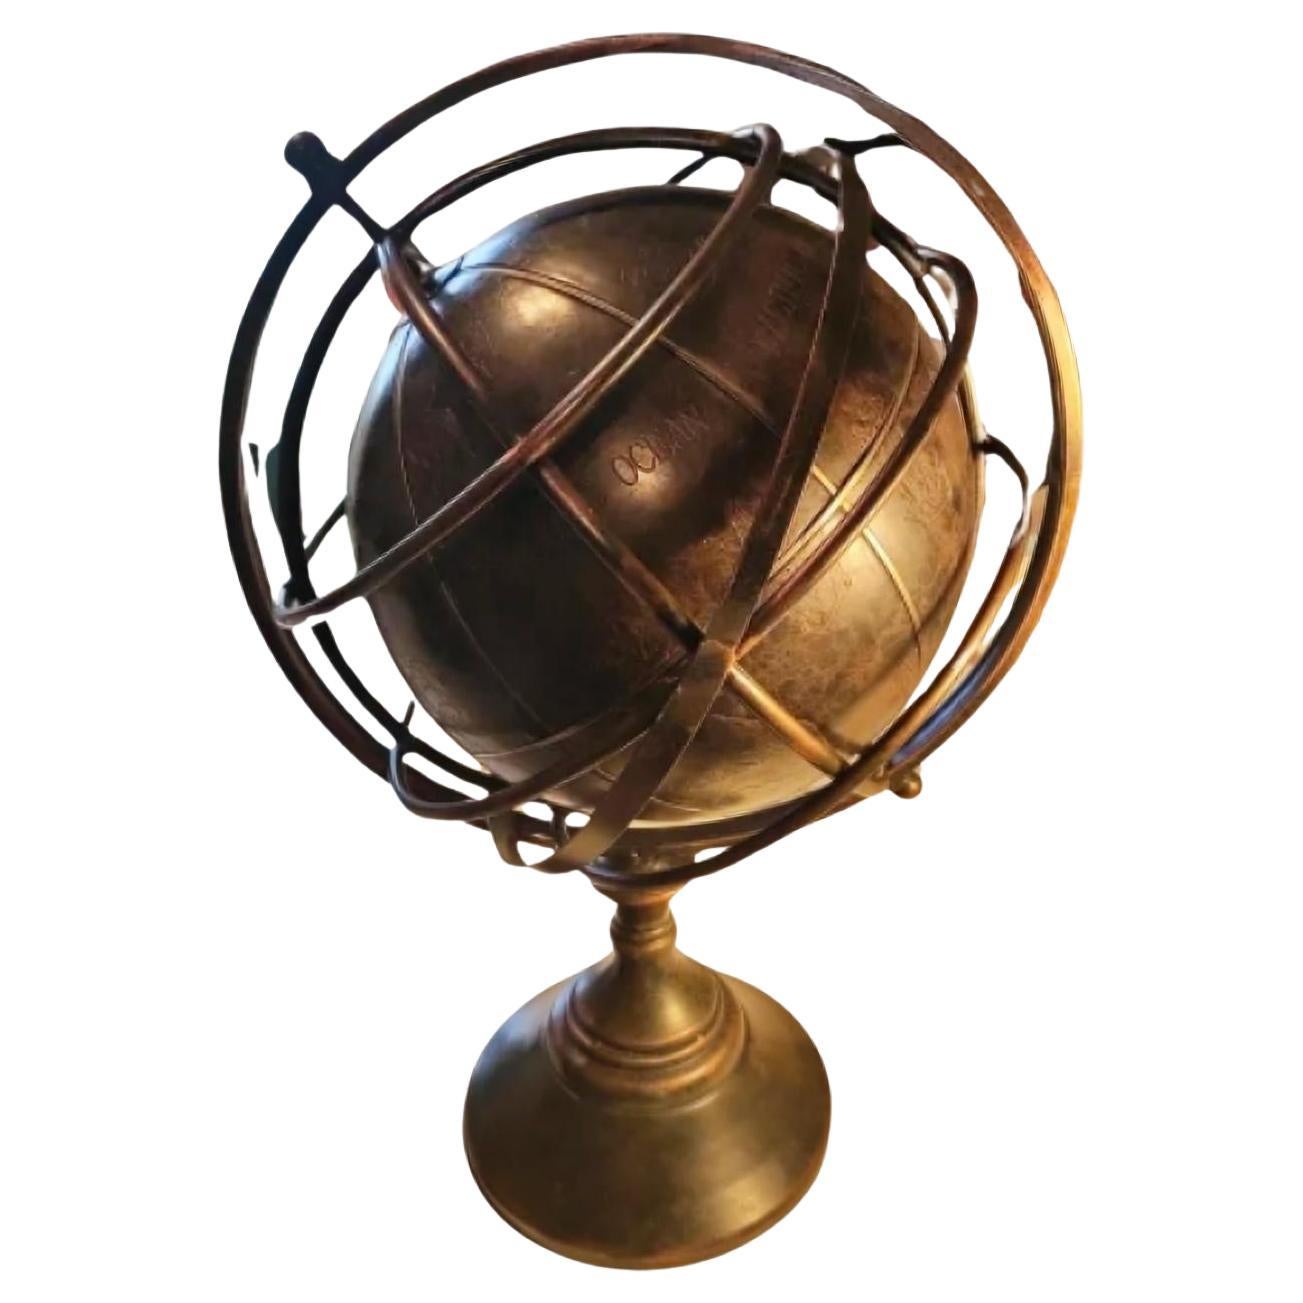 How do I read an armillary sphere?